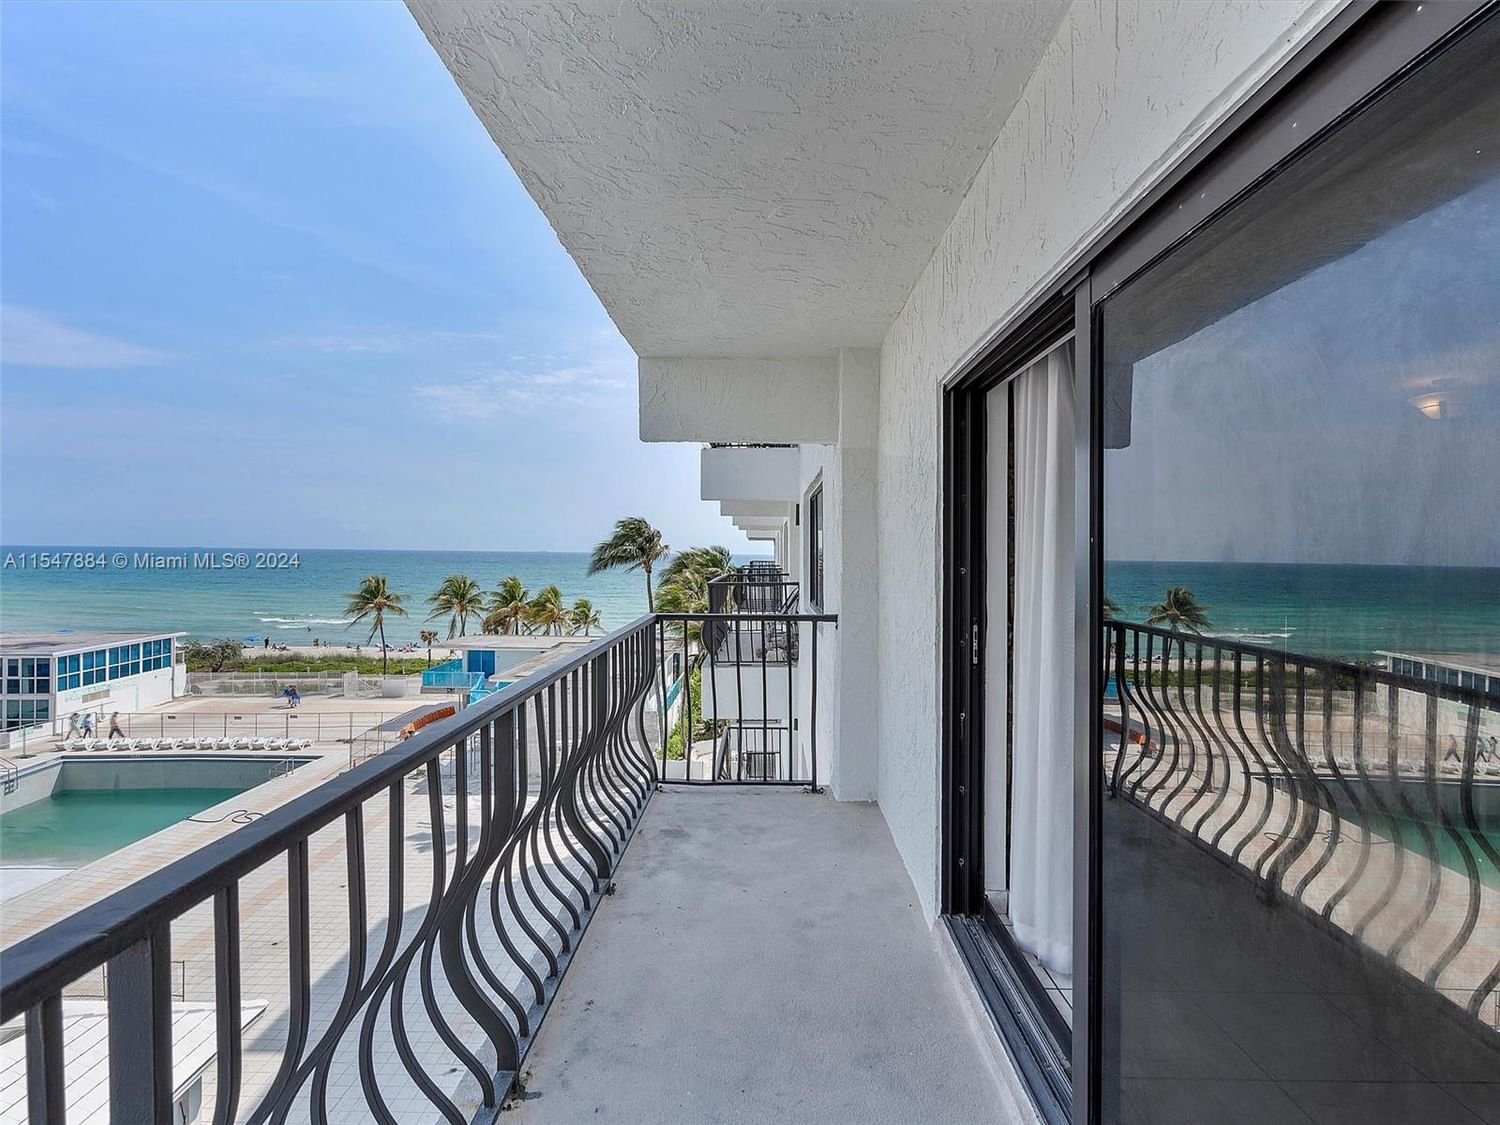 Real estate property located at 5415 Collins Ave #403, Miami-Dade County, GALERIA CONDO, Miami Beach, FL